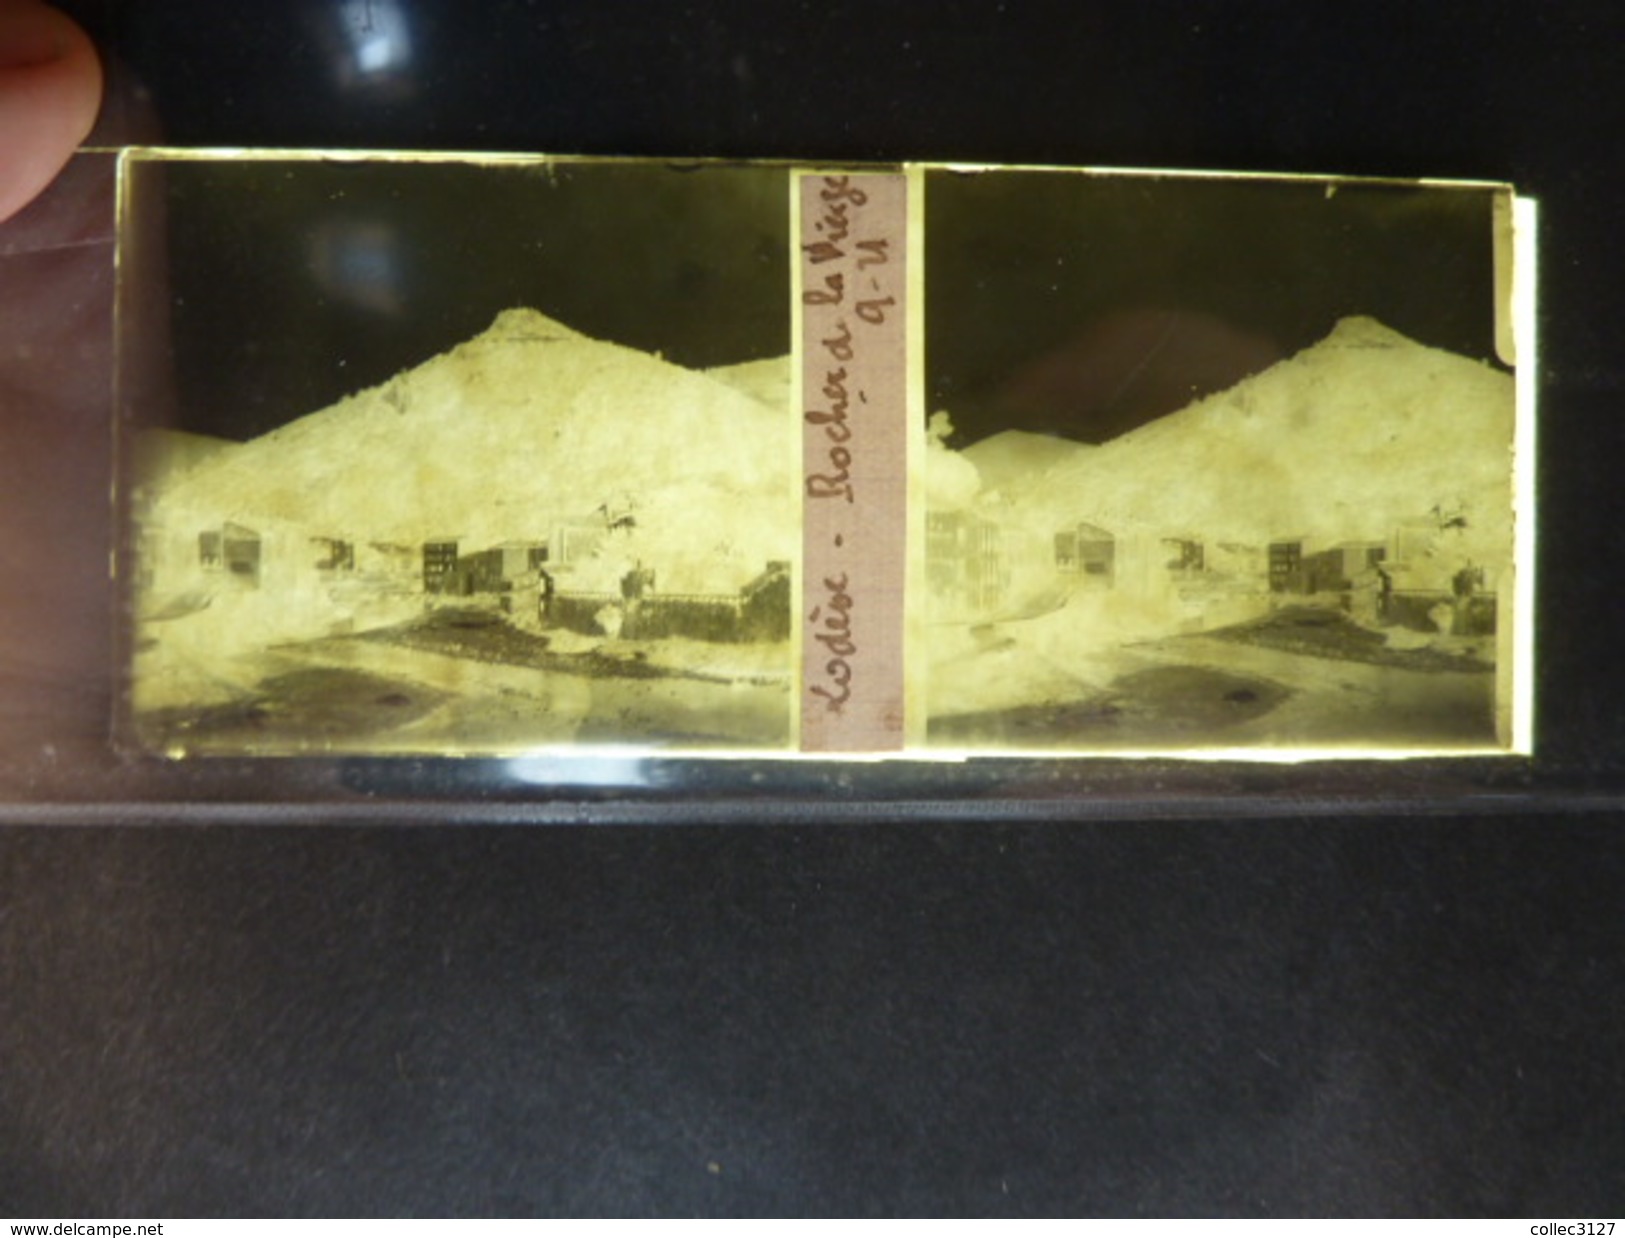 11 - Lodeve - Rocher De La Vierge - Negatif Stereoscopique Sur Plaque De Verre - 1921 - Glass Slides